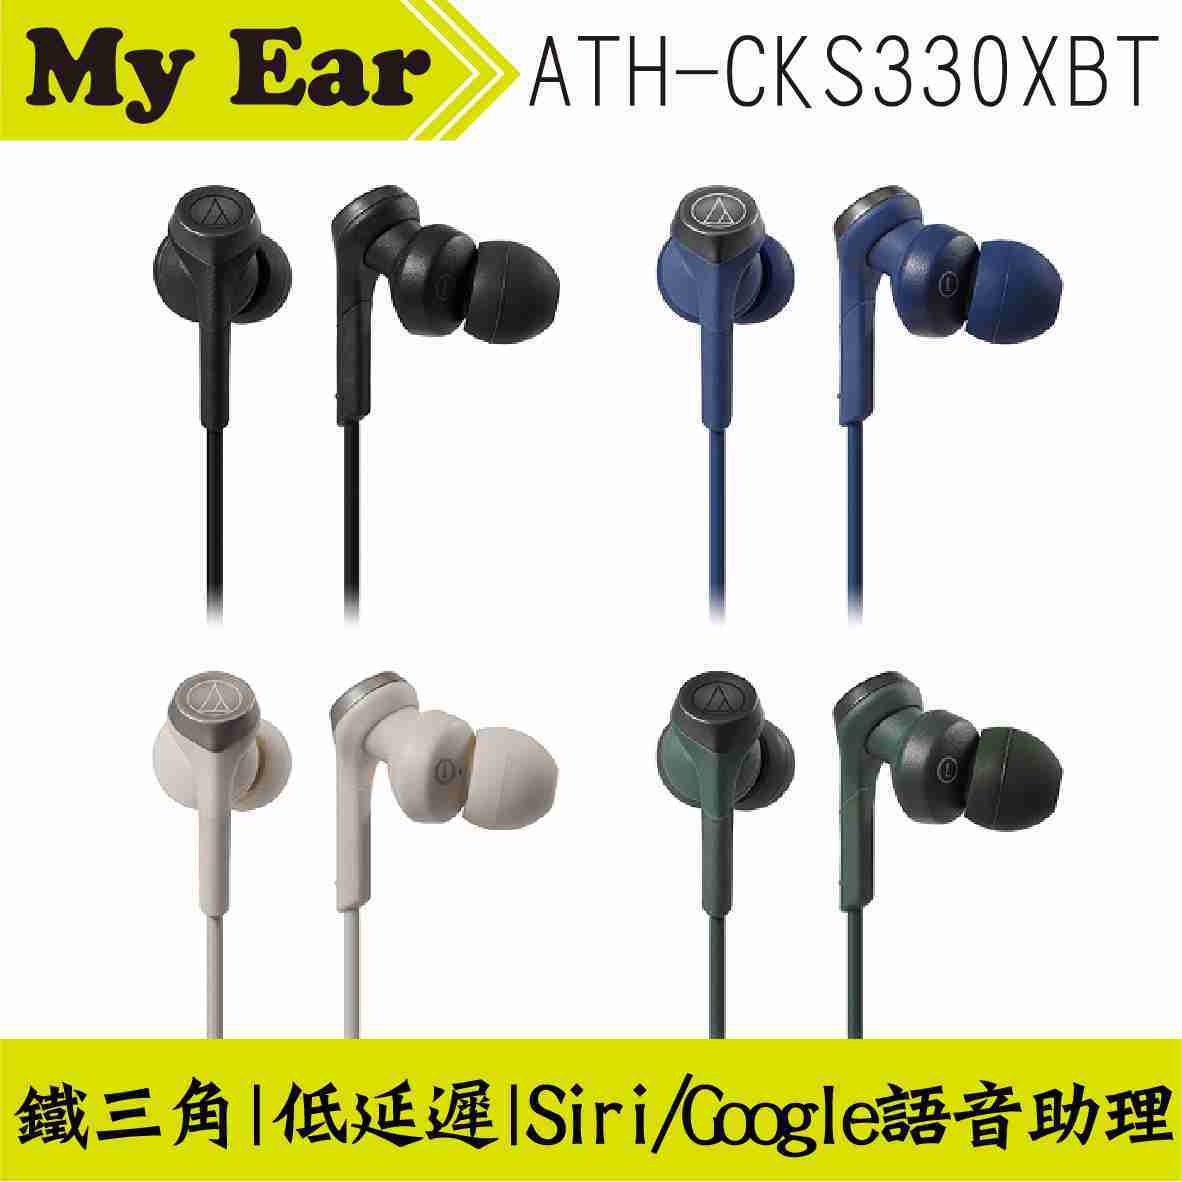 鐵三角 ATH-CKS330XBT 米色 藍芽5.0 無線 耳道式耳機 | My Ear 耳機專門店